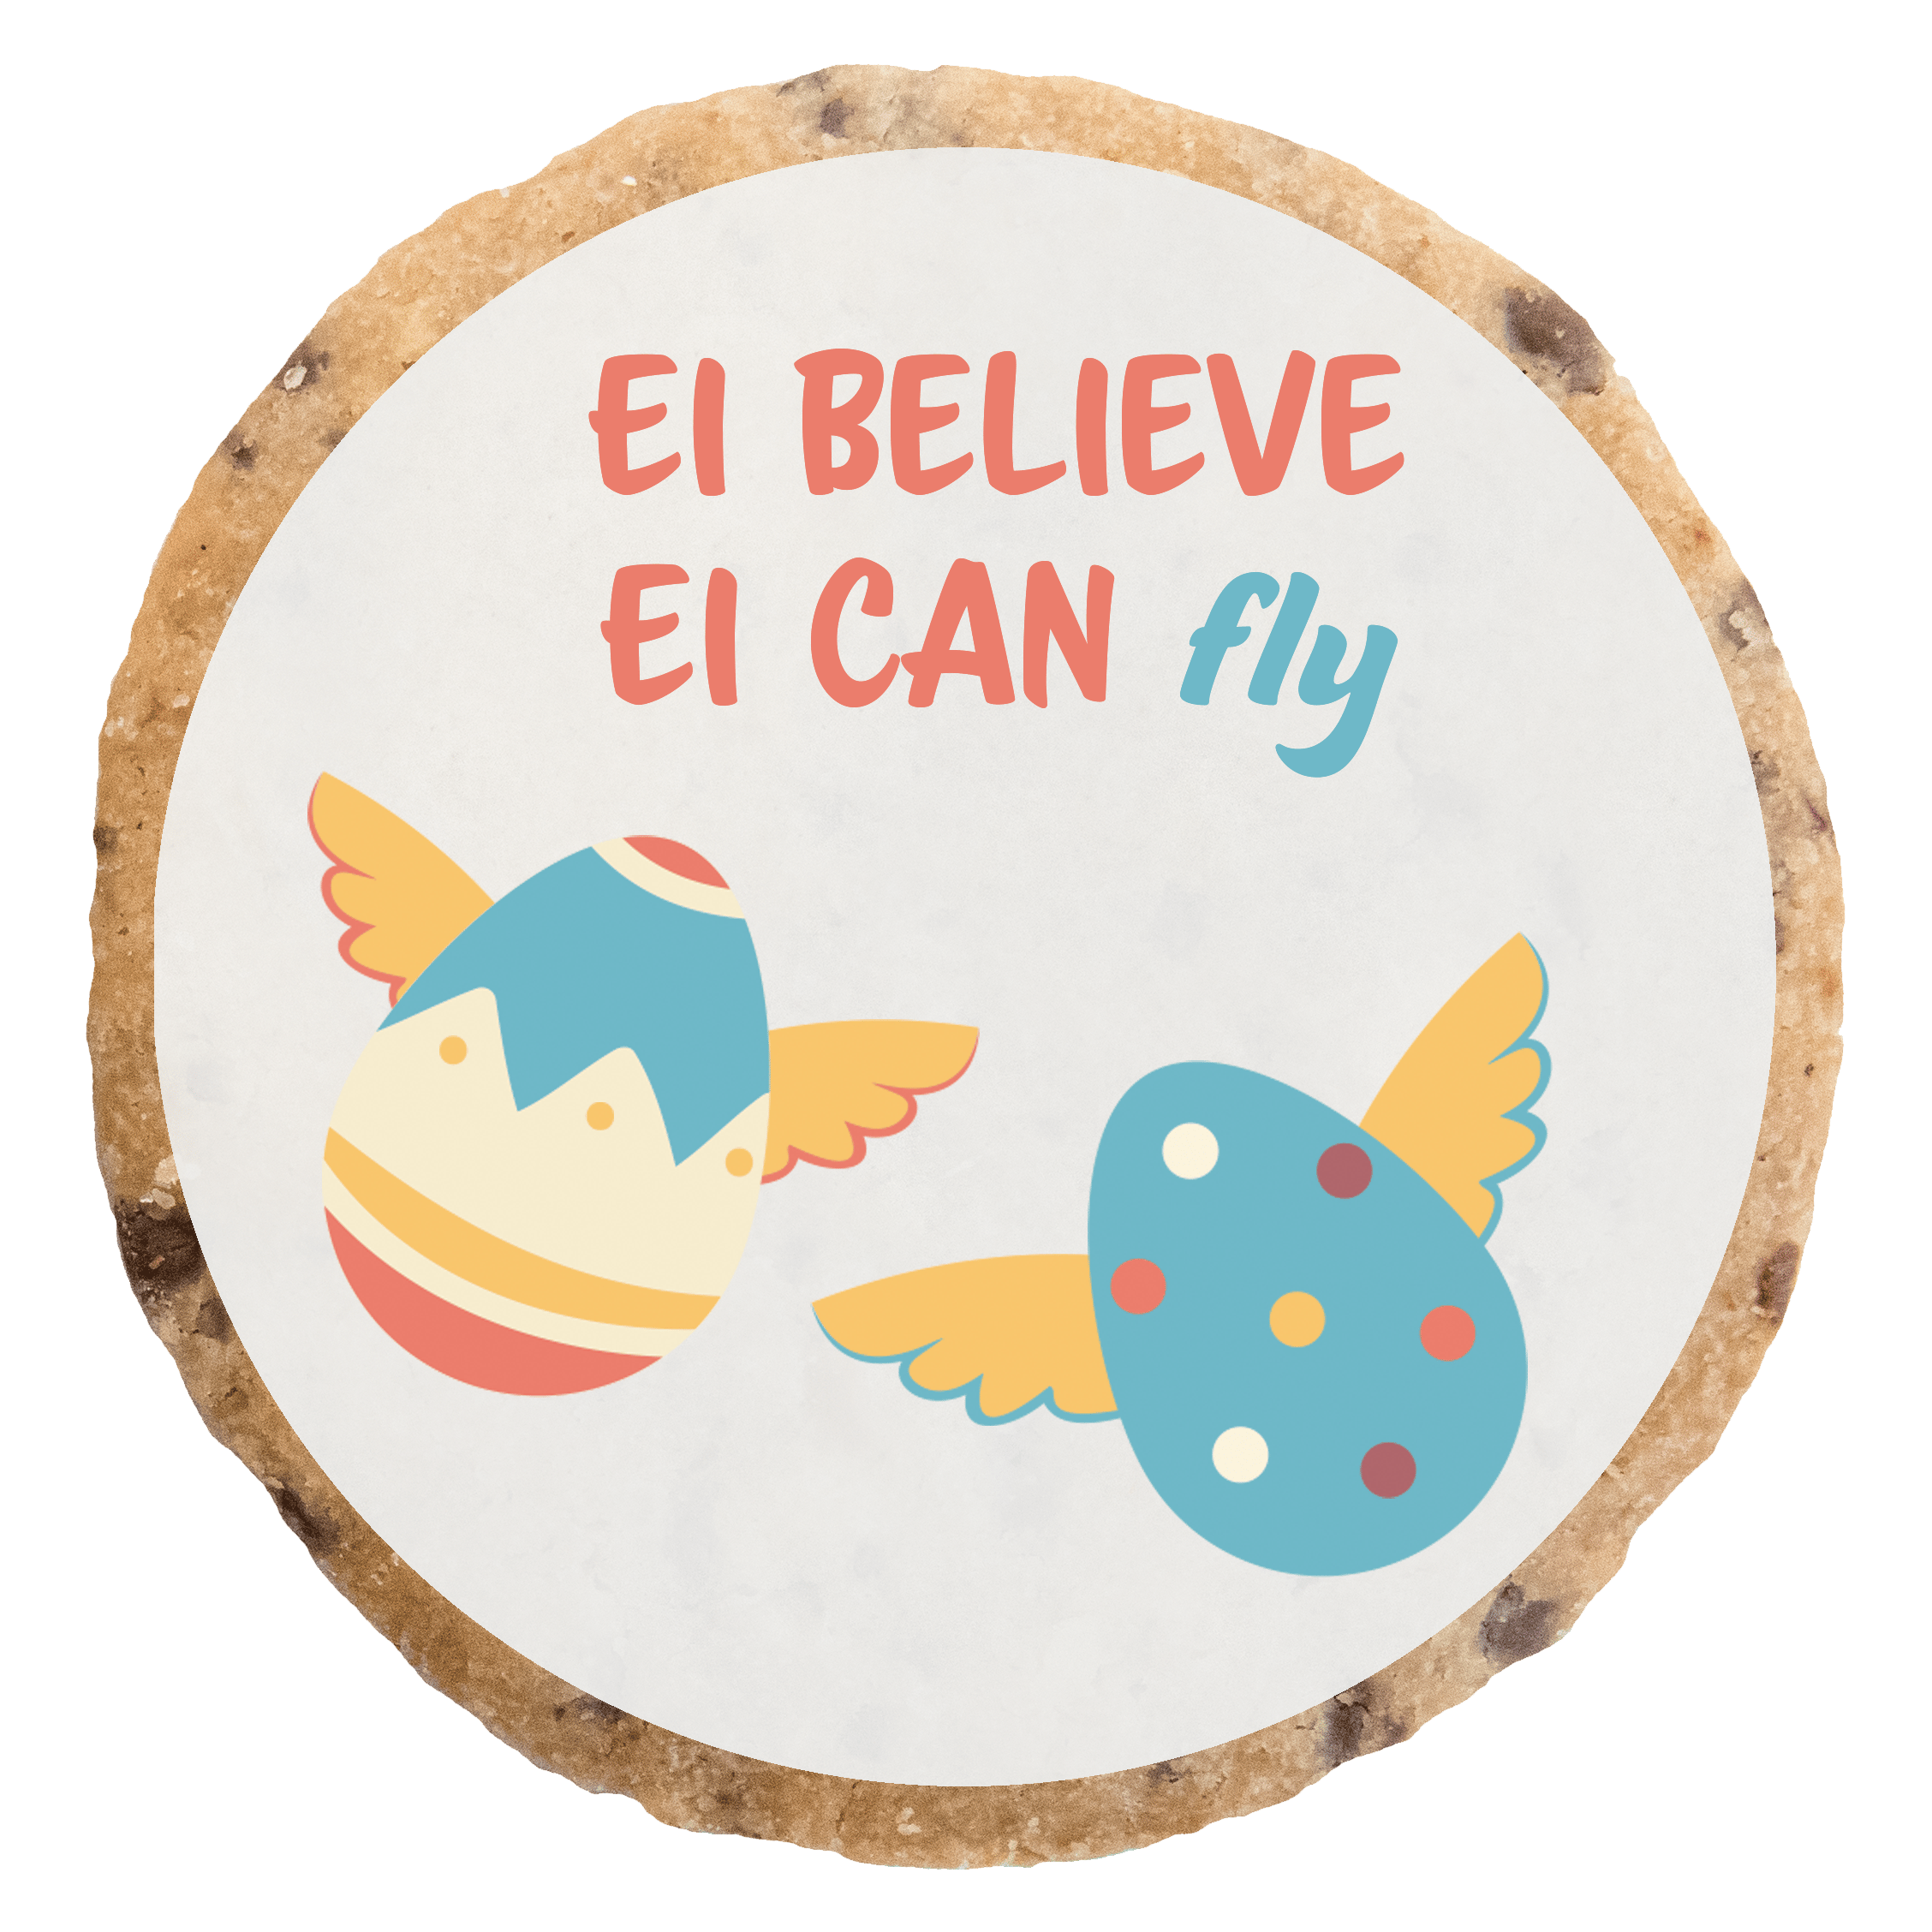 "Ei believe Ei can fly 2" MotivKEKS 